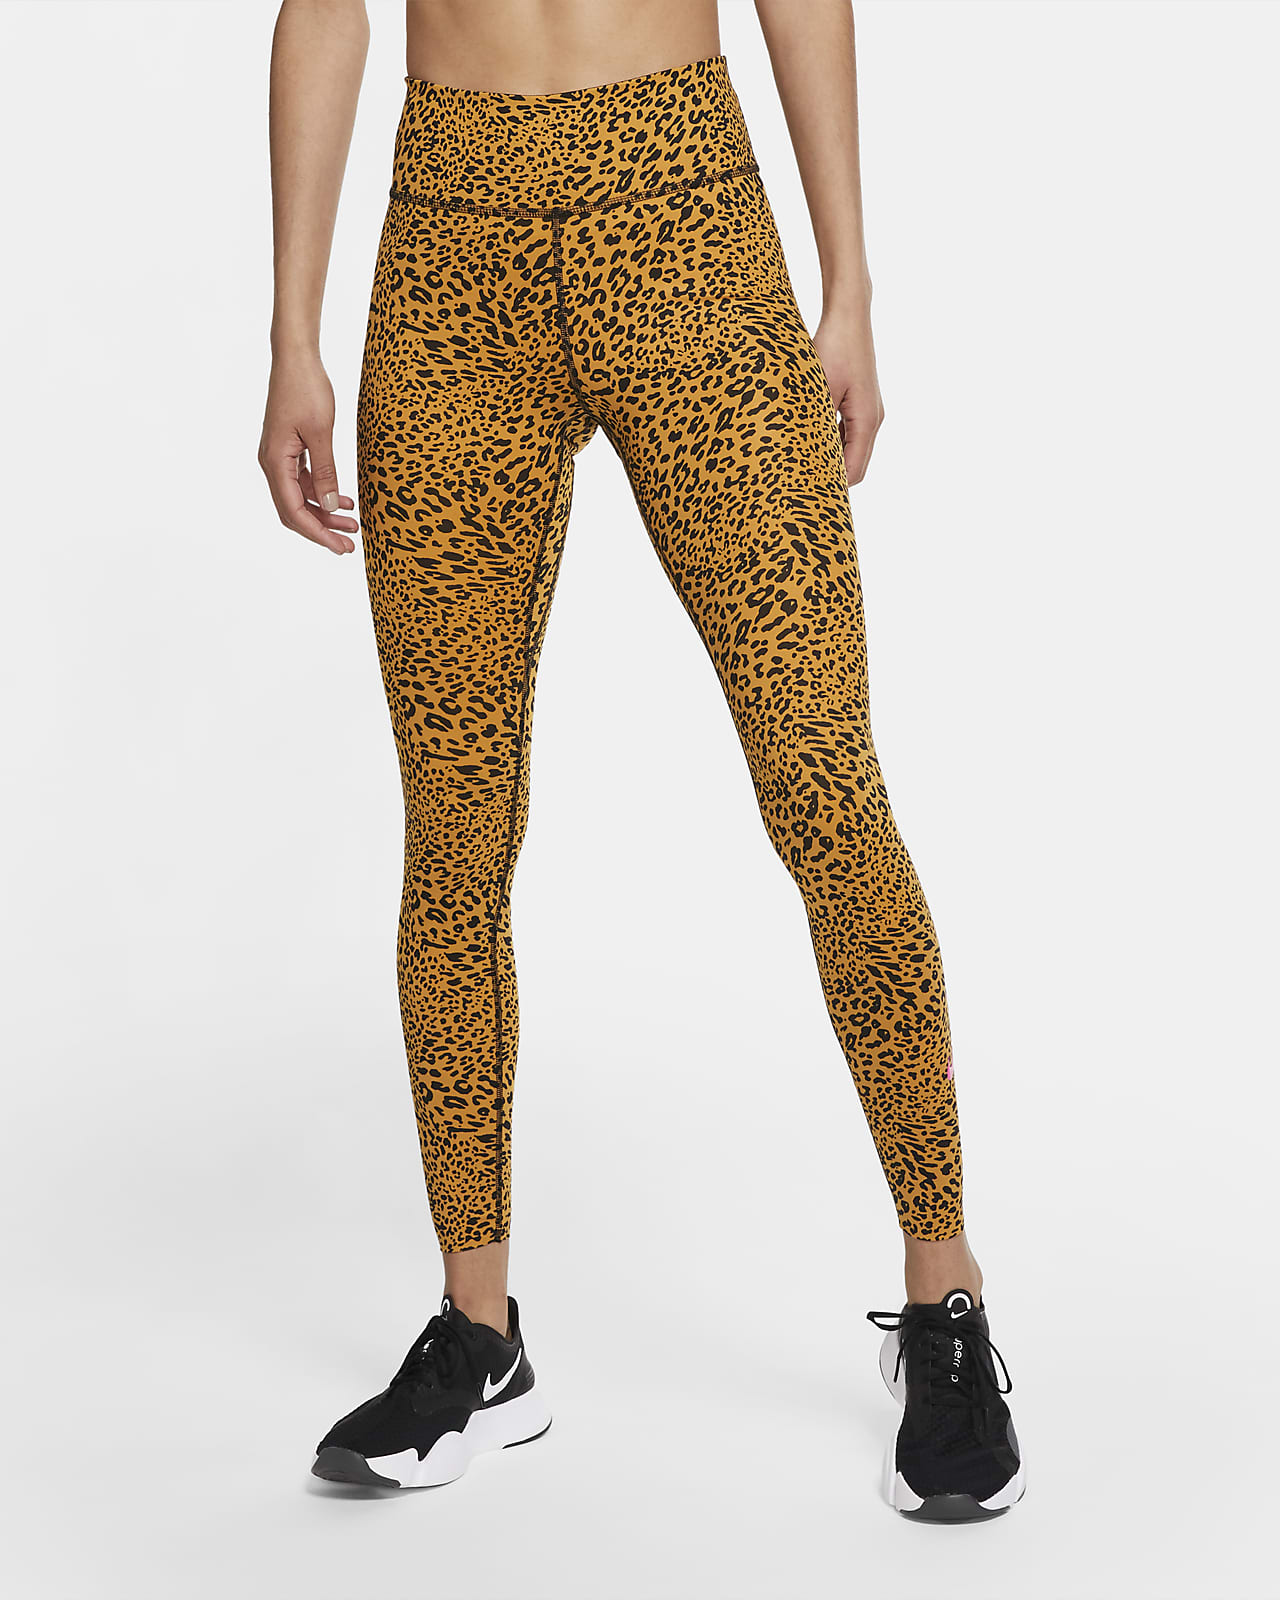 nike pro leopard leggings